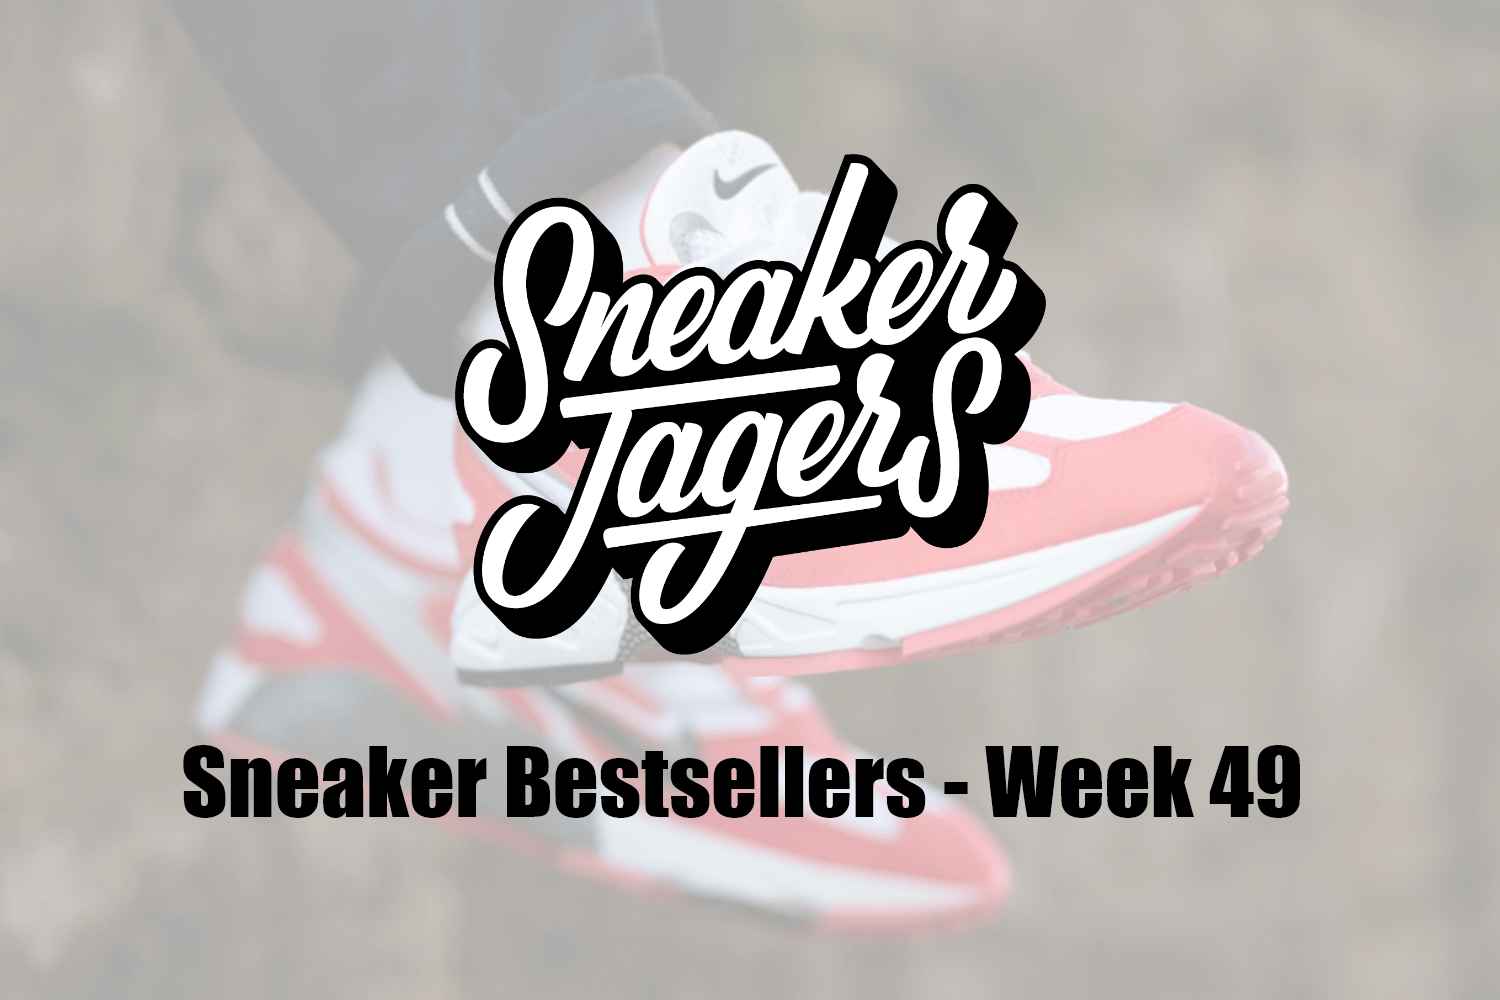 Our Sneaker Bestsellers - Week 49 - What's on Trend 📈